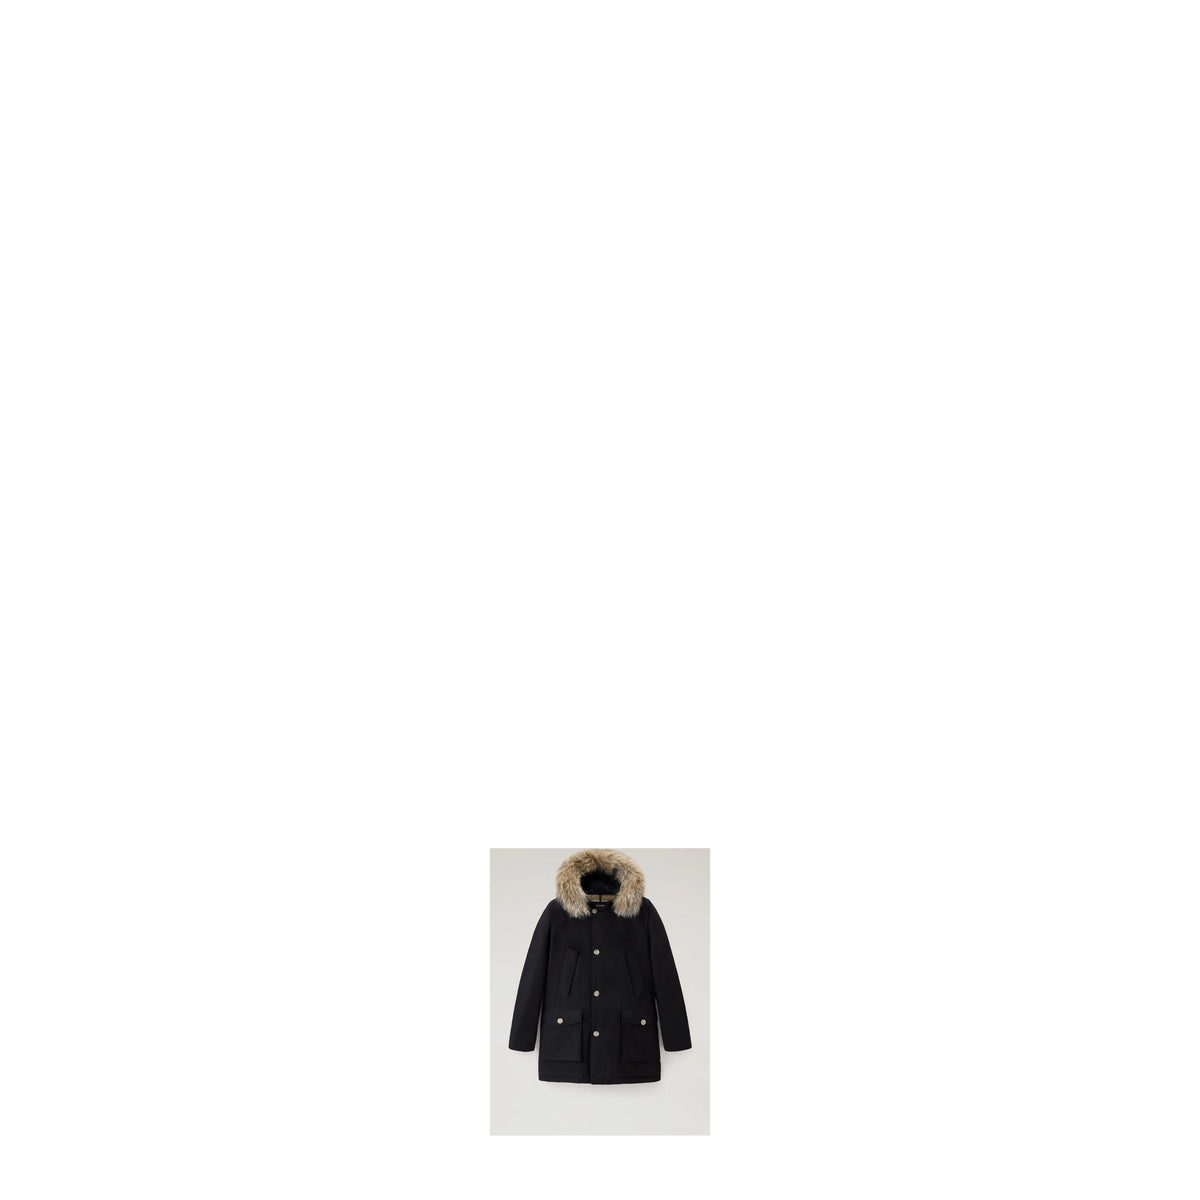 Woolrich Idee regalo jacket artic parka Uomo Cotone Nero